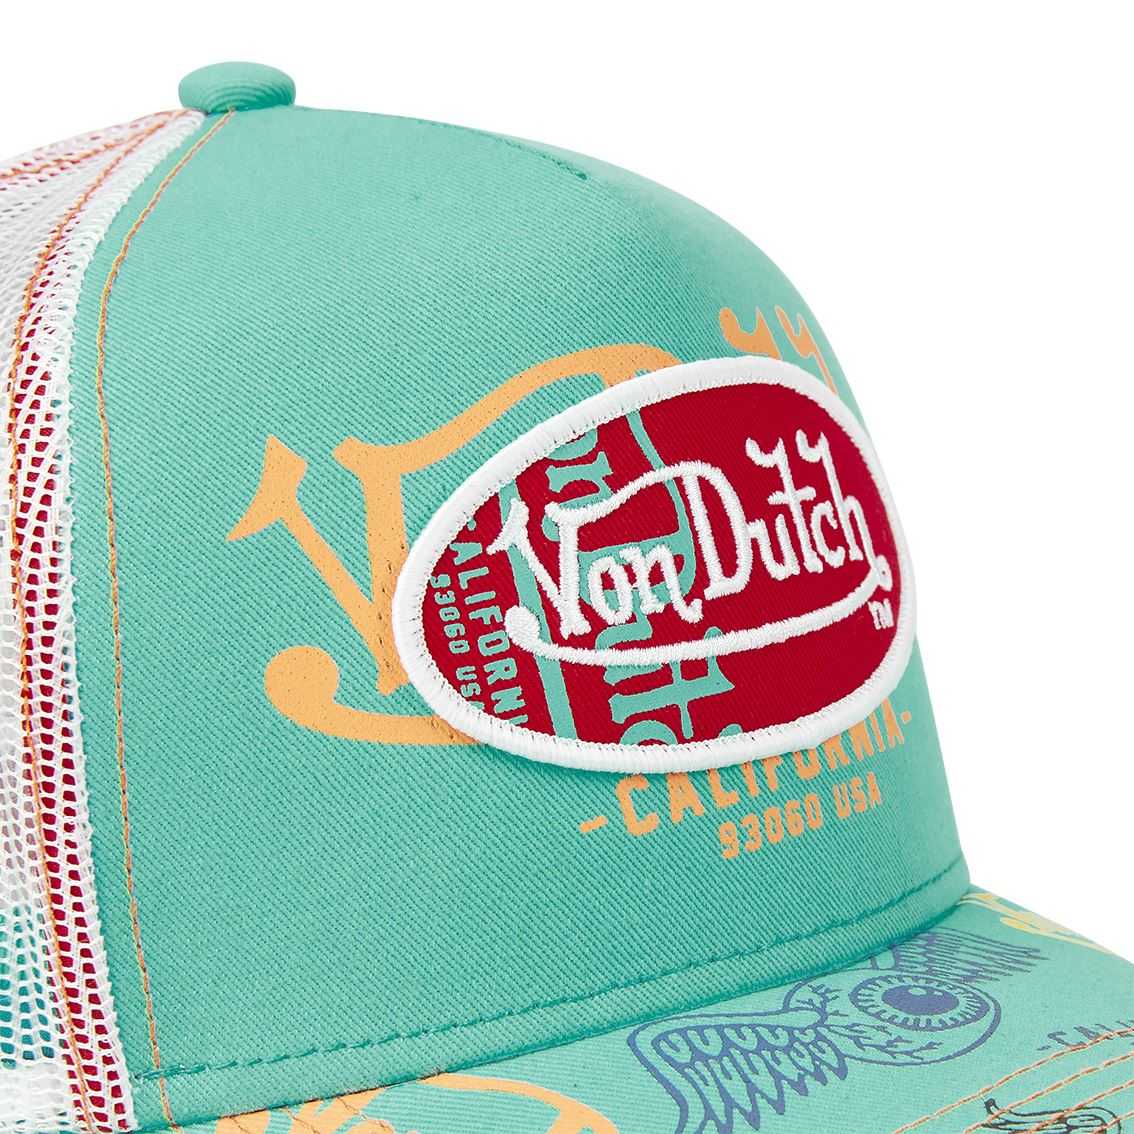 Mode : la casquette Von Dutch peut-elle (encore) faire son grand retour ? -  Voici